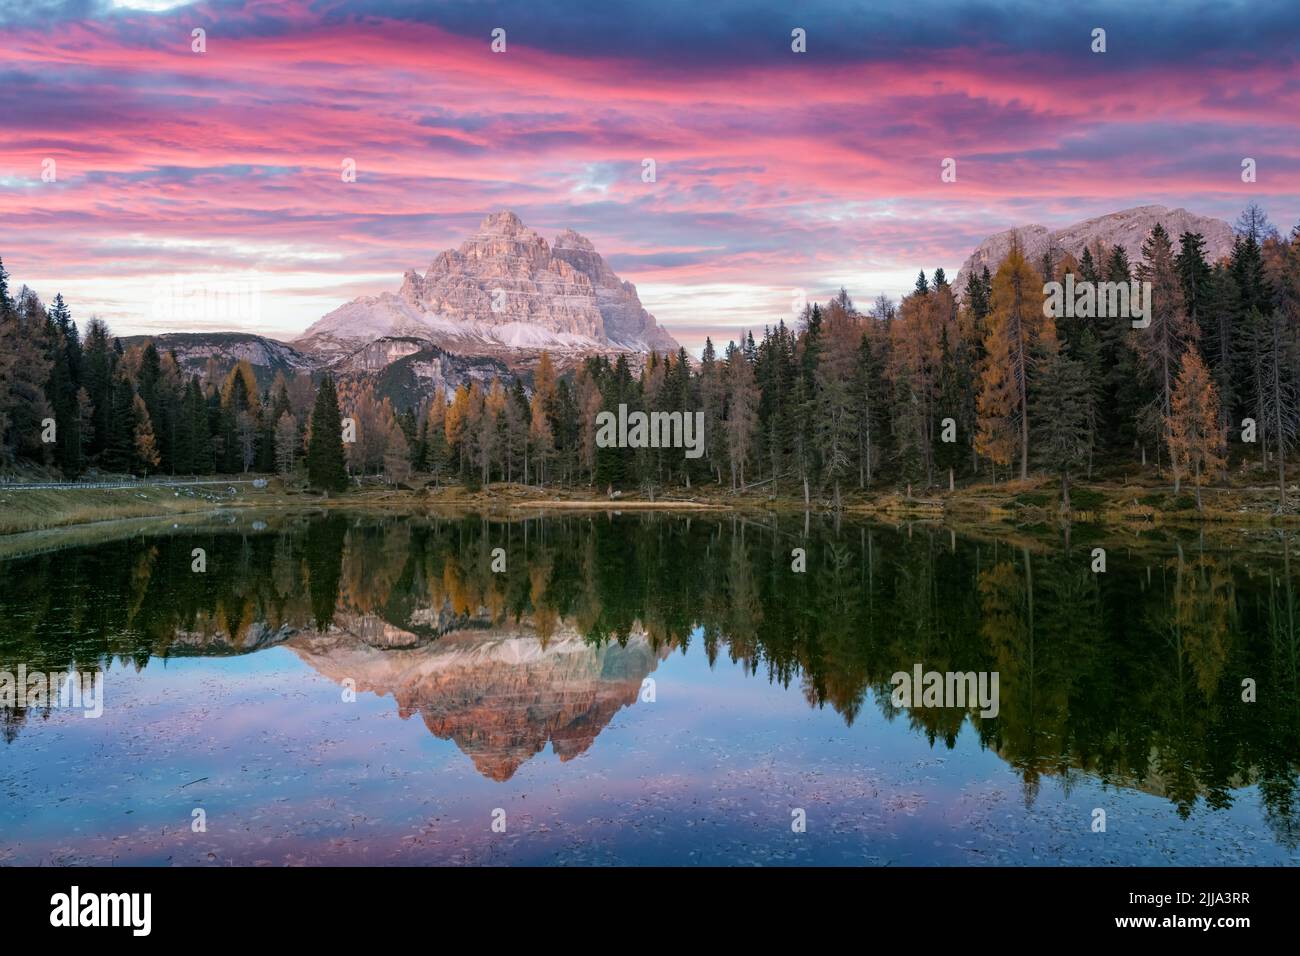 Paysage pittoresque avec le célèbre lac Antorno (Lago di Antorno) en automne Dolomites montagnes. Incroyable coucher de soleil dans les Dolomites d'Italie. Photographie de paysage Banque D'Images